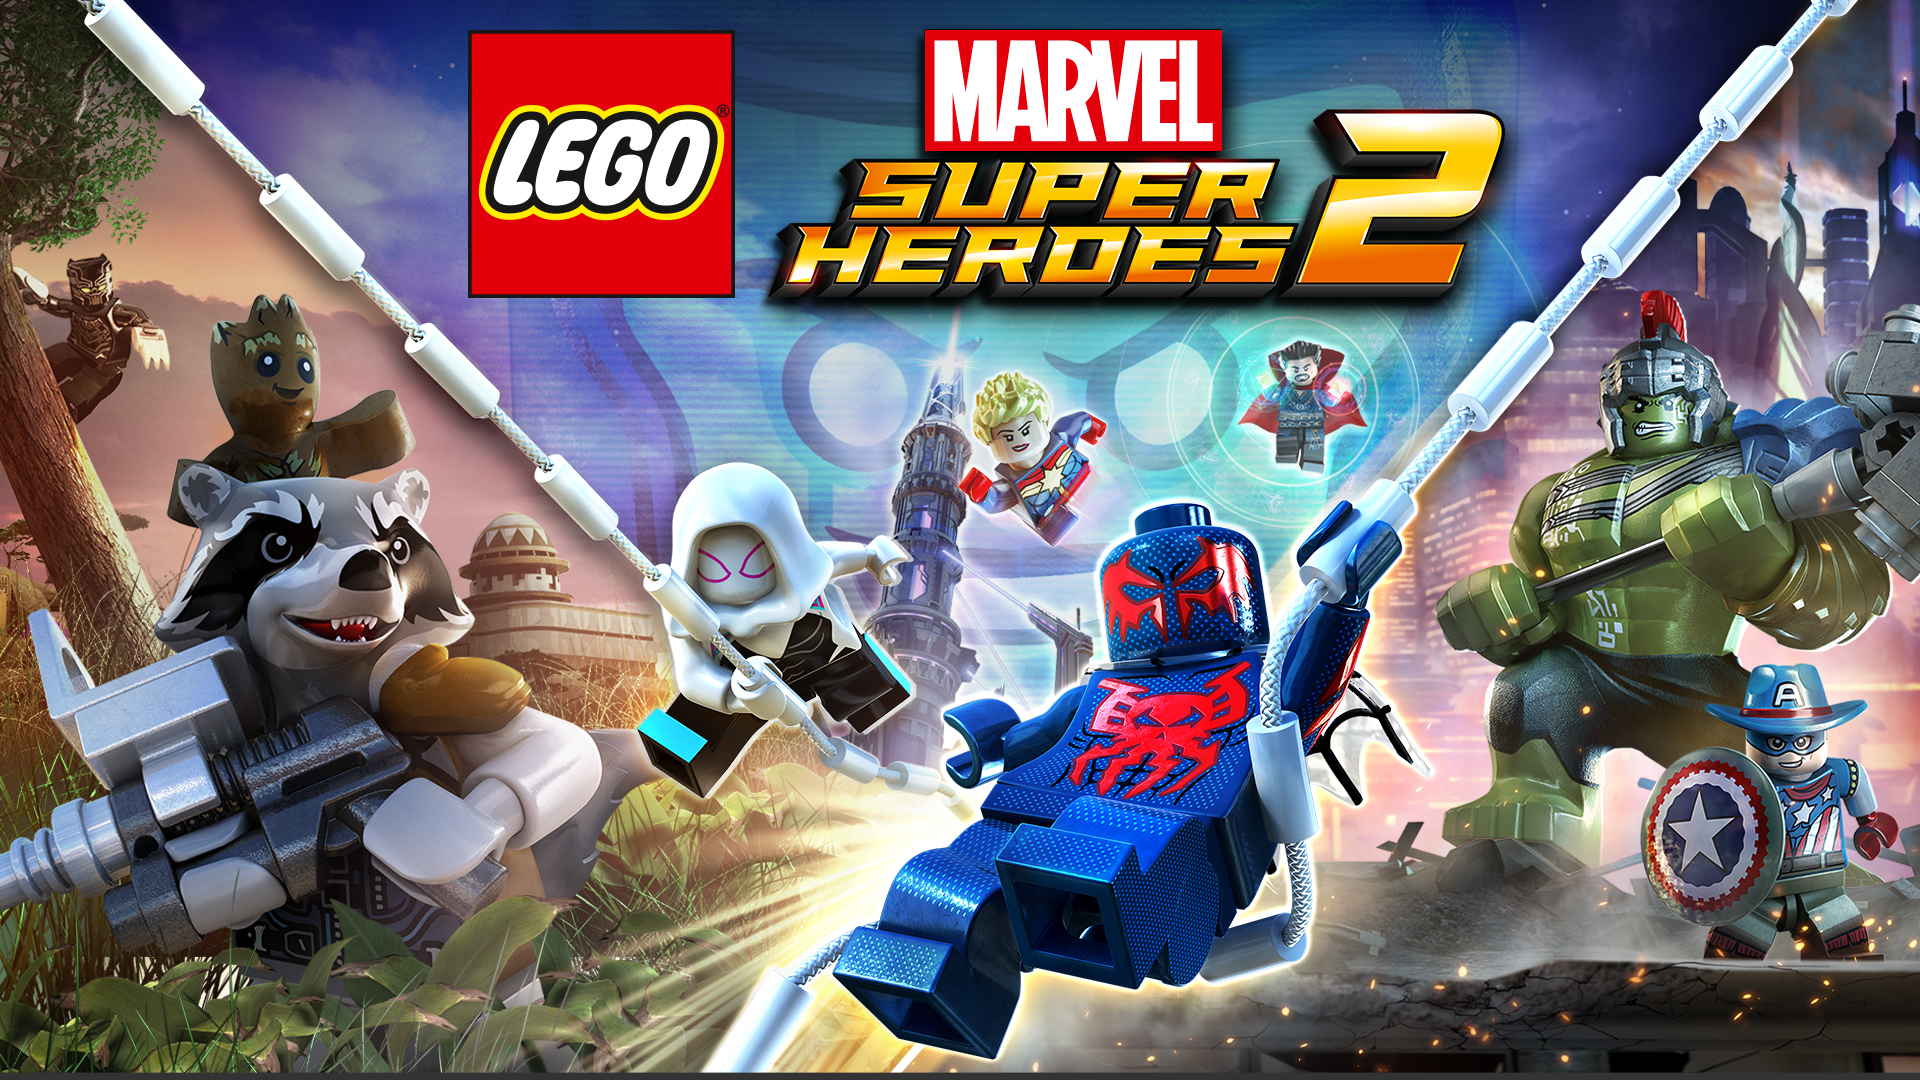 Anders Wordt erger fabriek LEGO® Marvel Super Heroes 2/Nintendo Switch/eShop Download